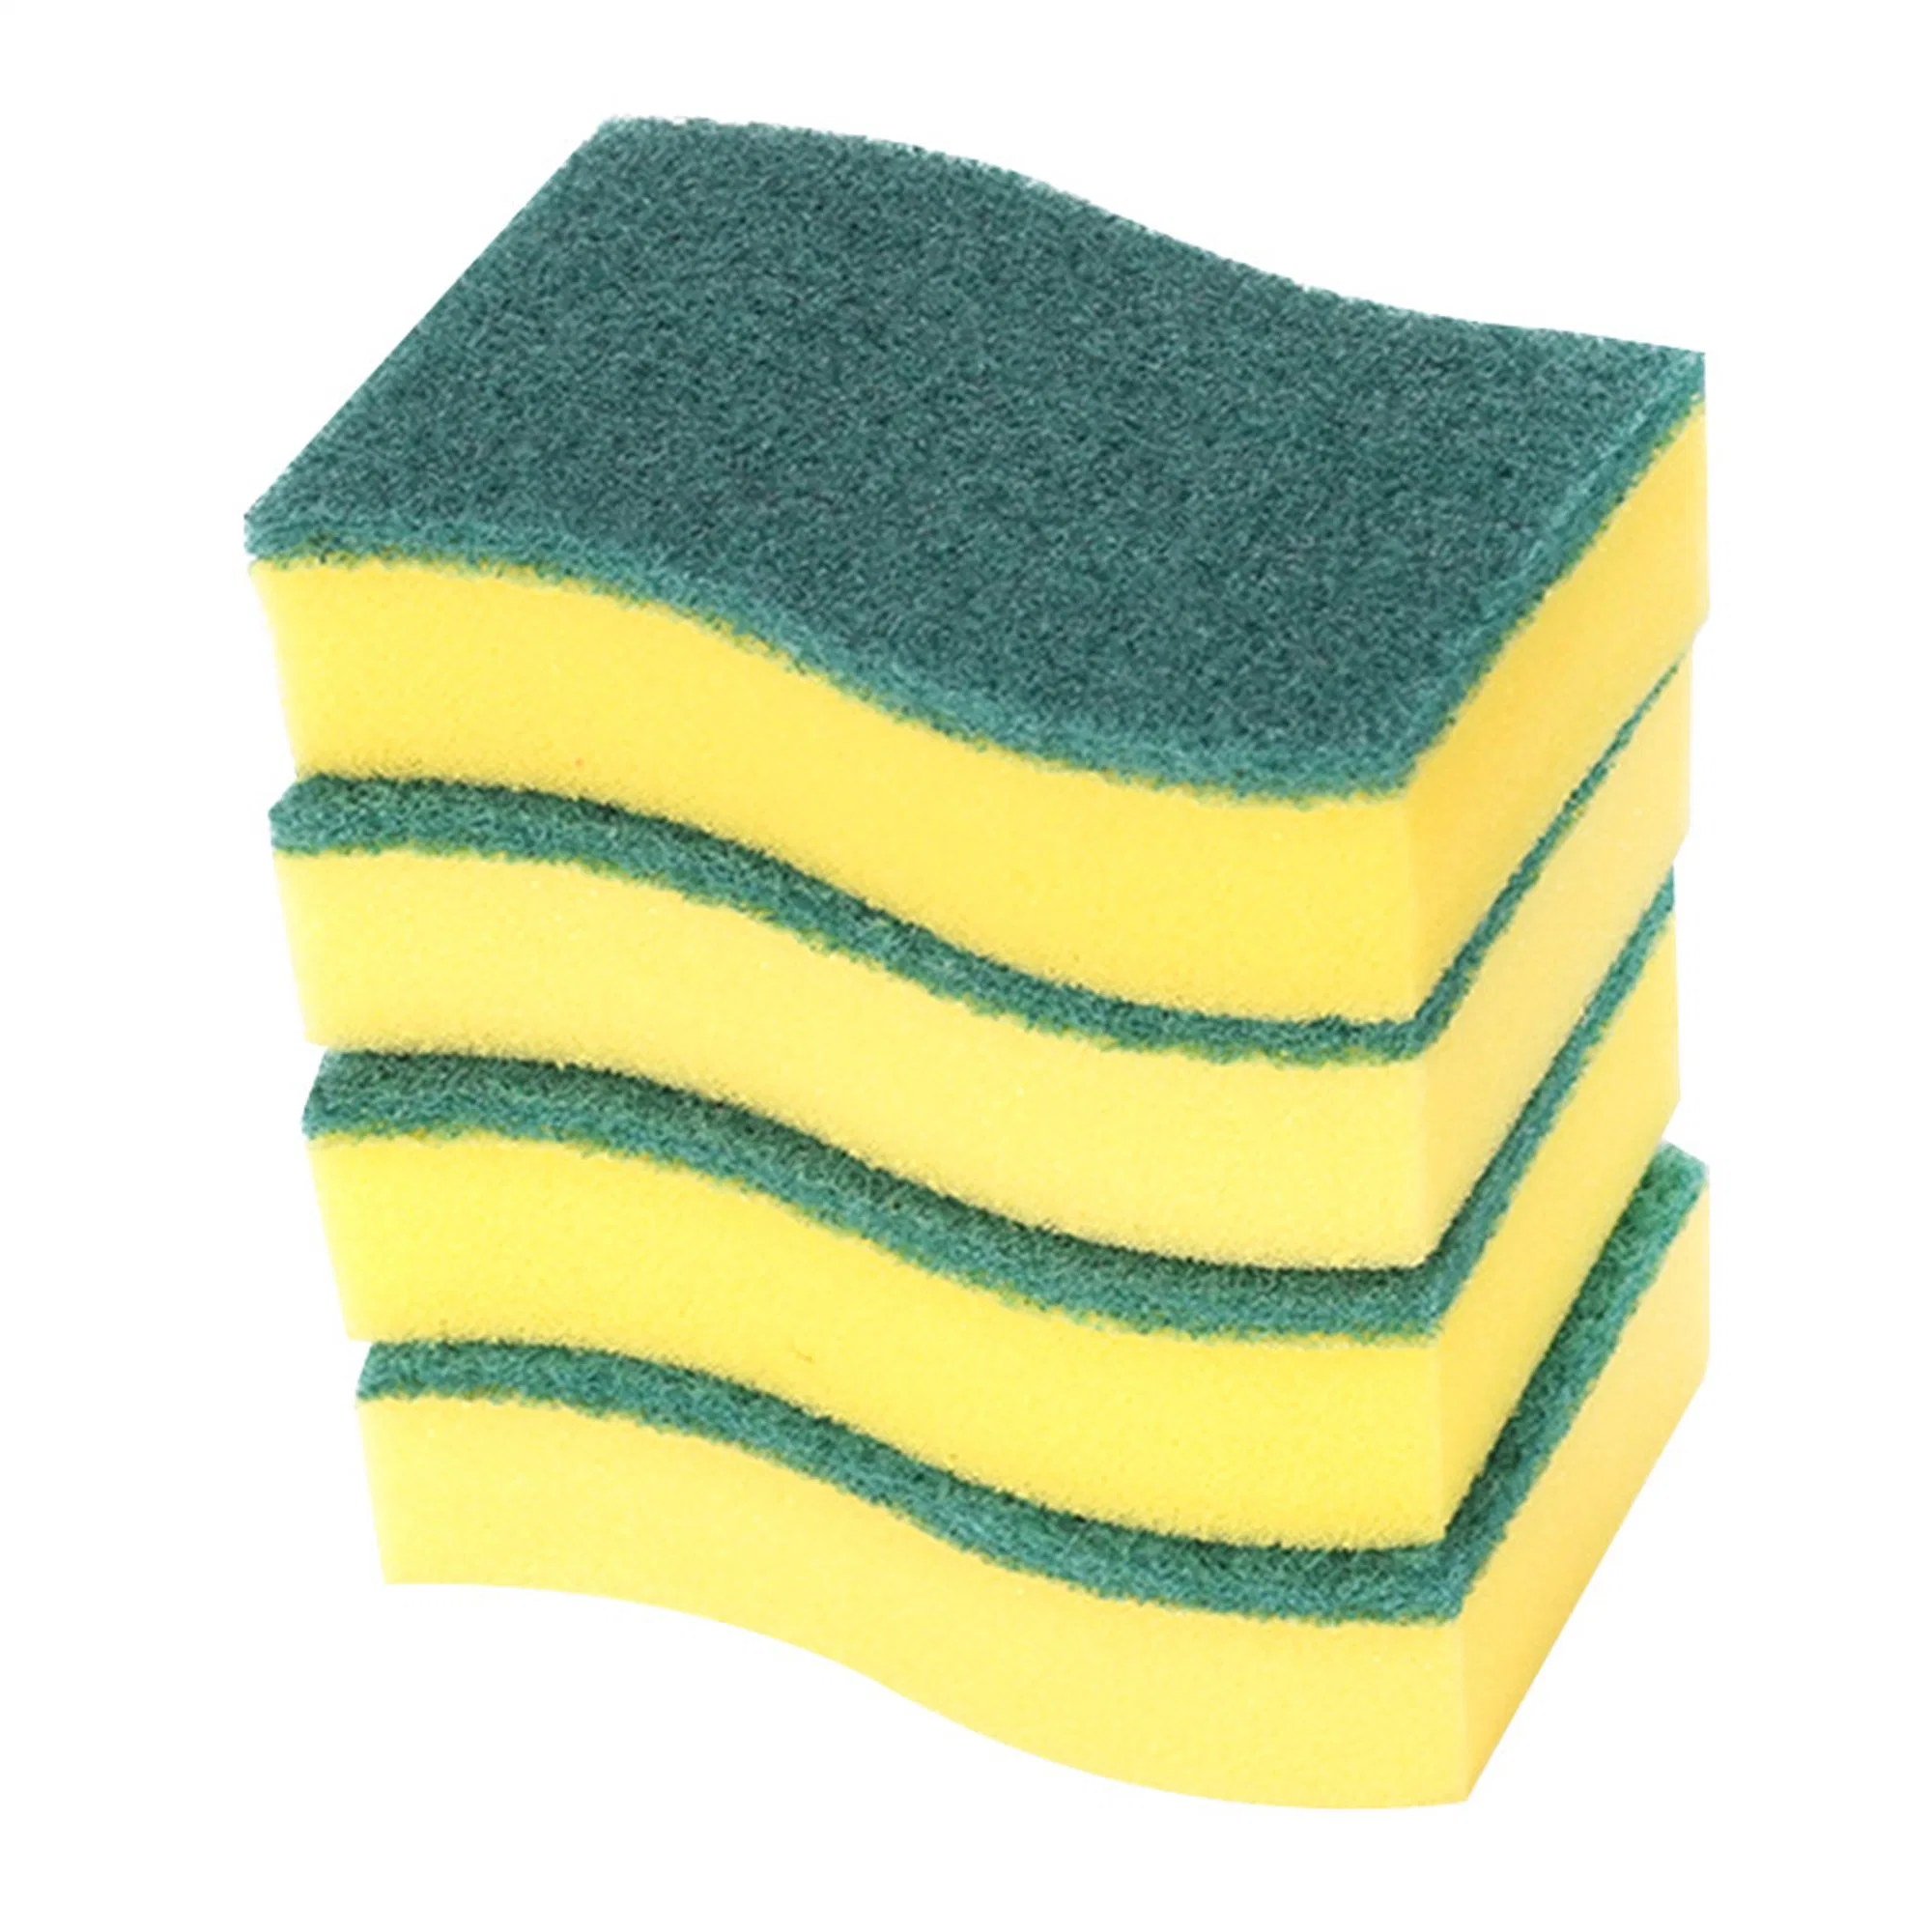 Esponja apestan esponja gratis de limpieza sin esfuerzo para los platos ollas sartenes a la vez una esponja exfoliante de limpieza de matorrales cuenta-12